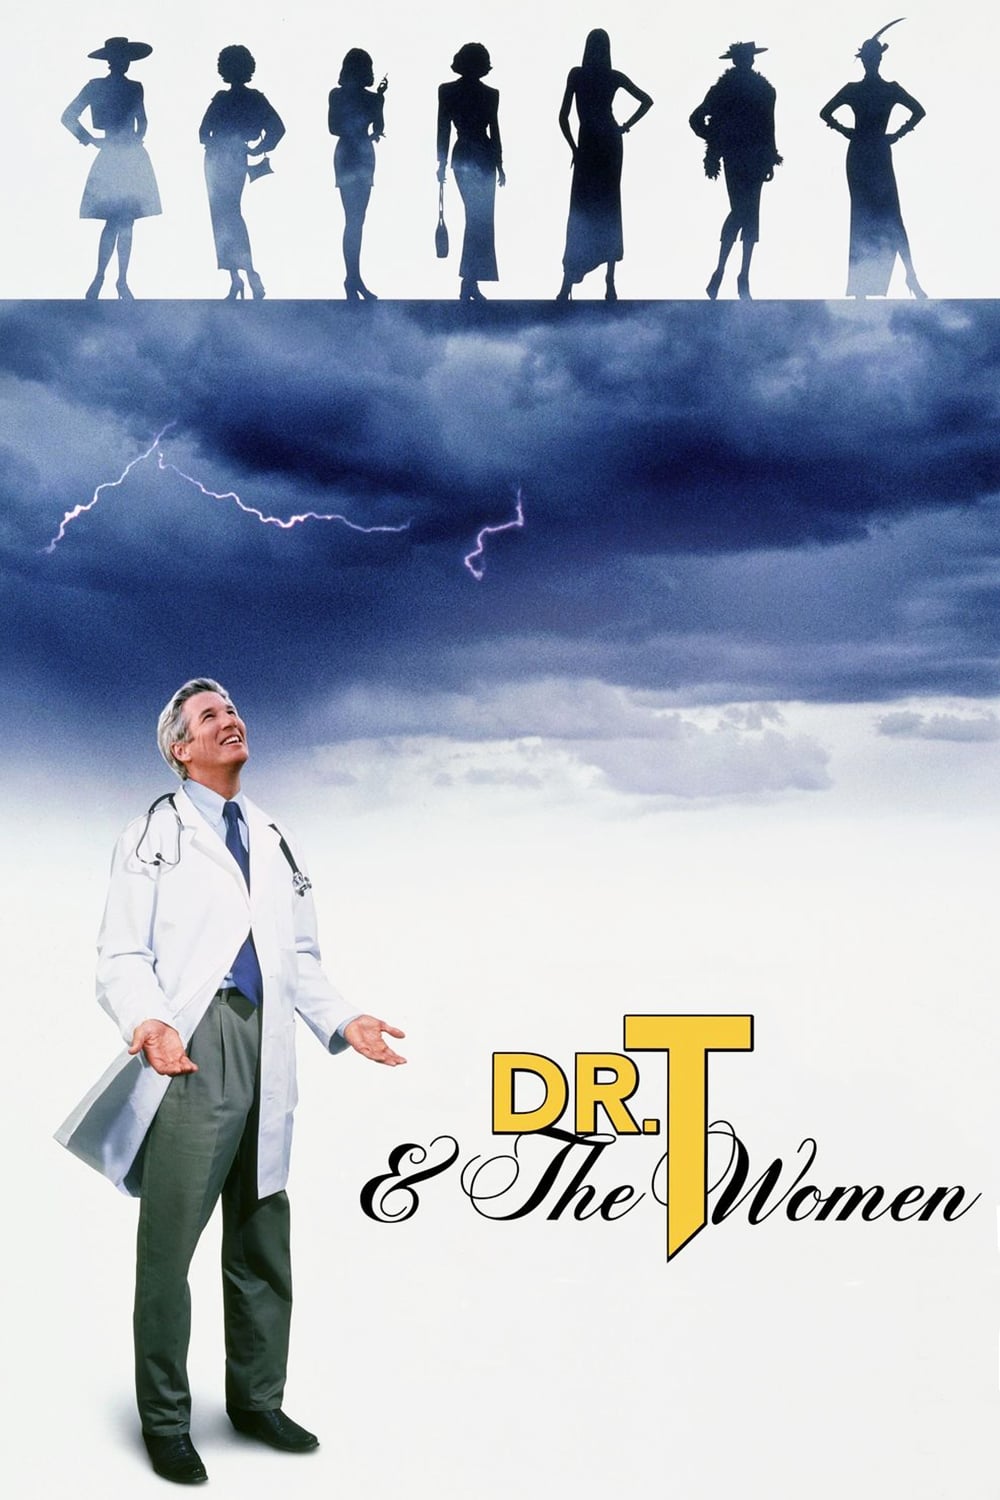 הנשים של ד"ר טי